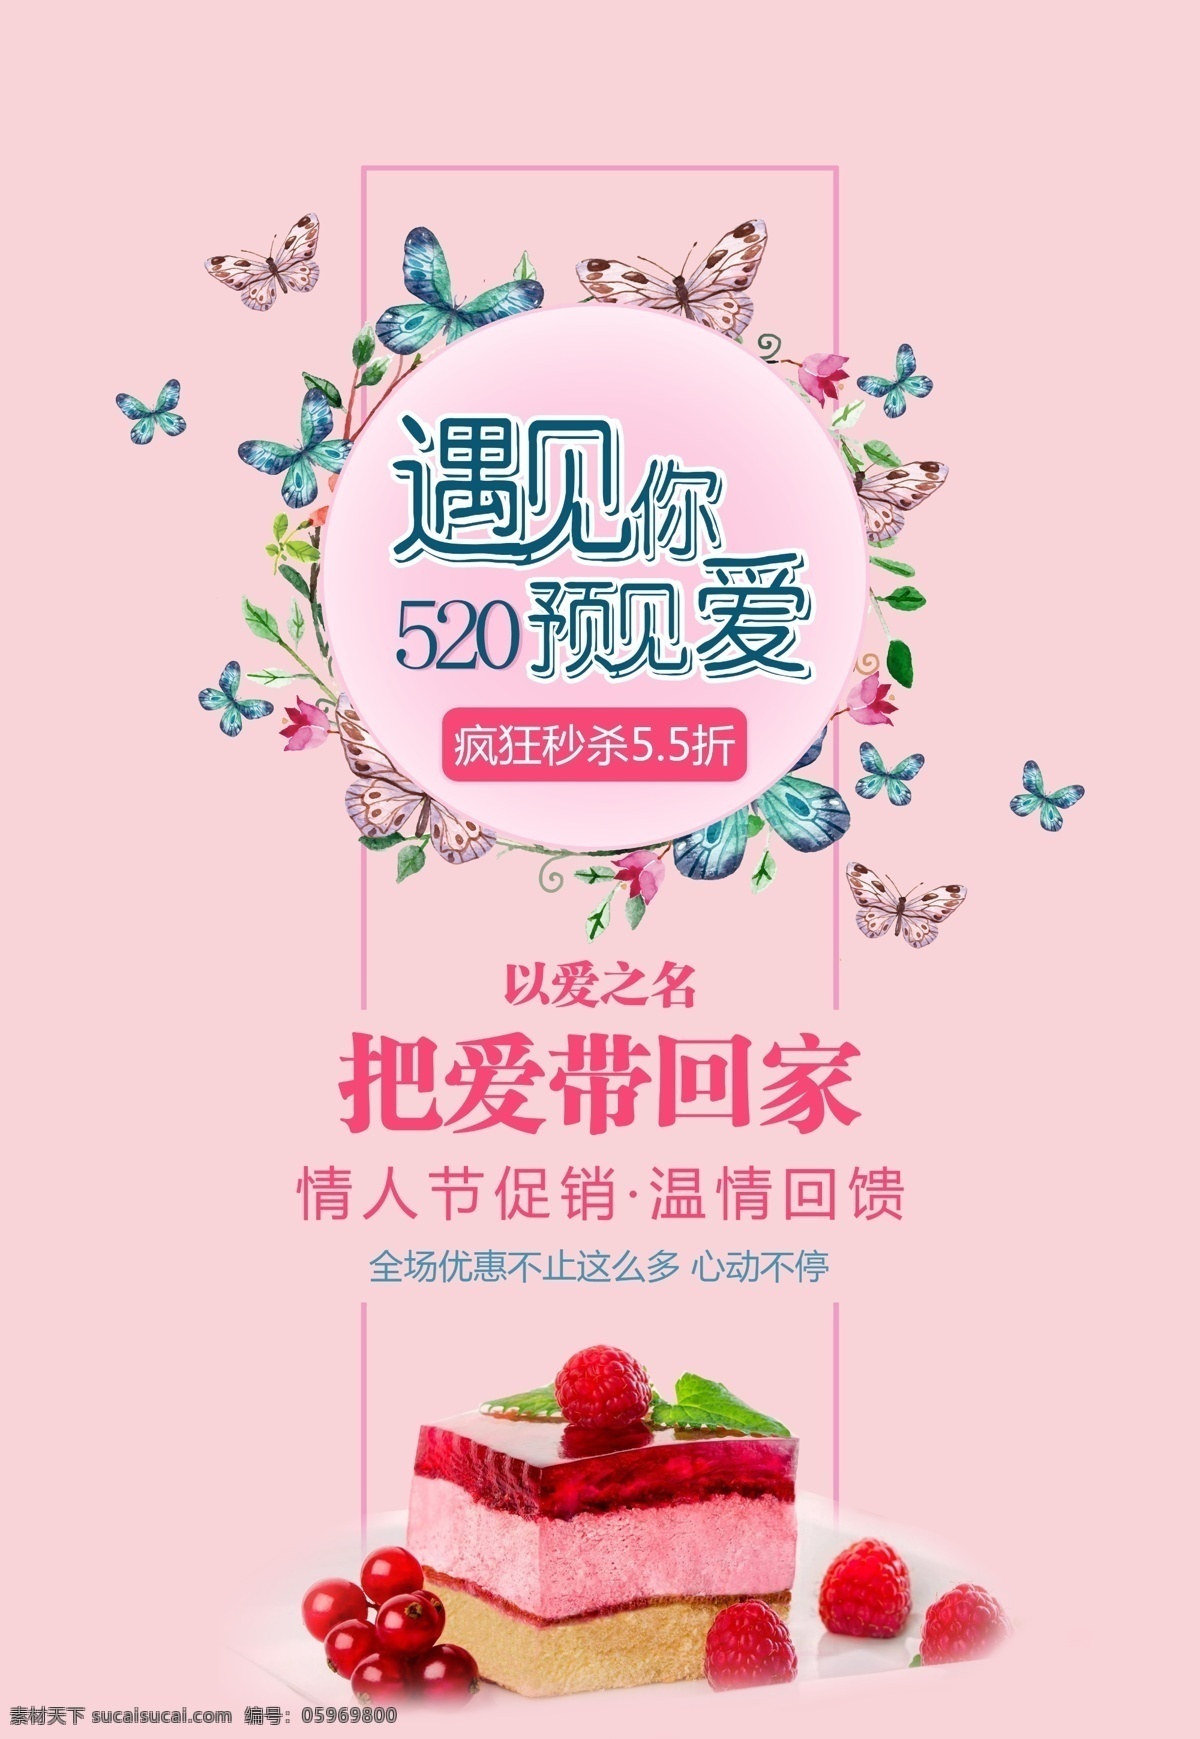 520 蛋糕 粉色 花环 七夕 情人节 甜品 唯美 遇见爱 海报 展板